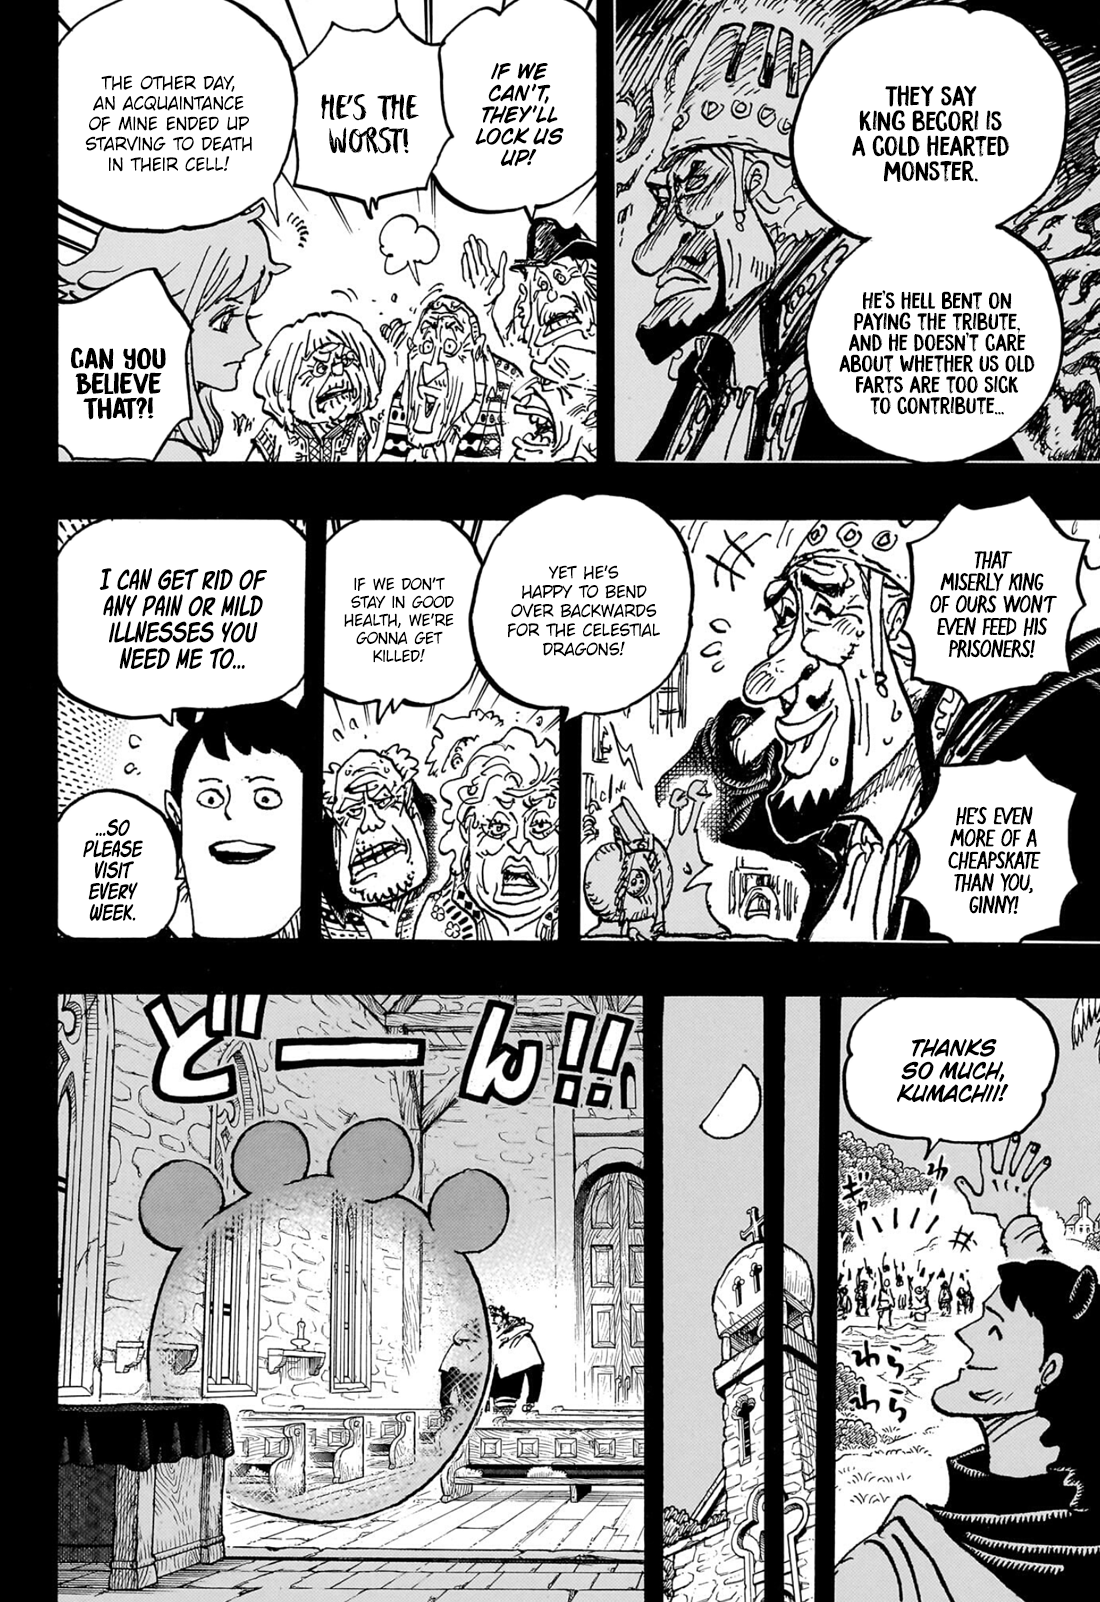 Read One Piece Chapter 1050 on Mangakakalot